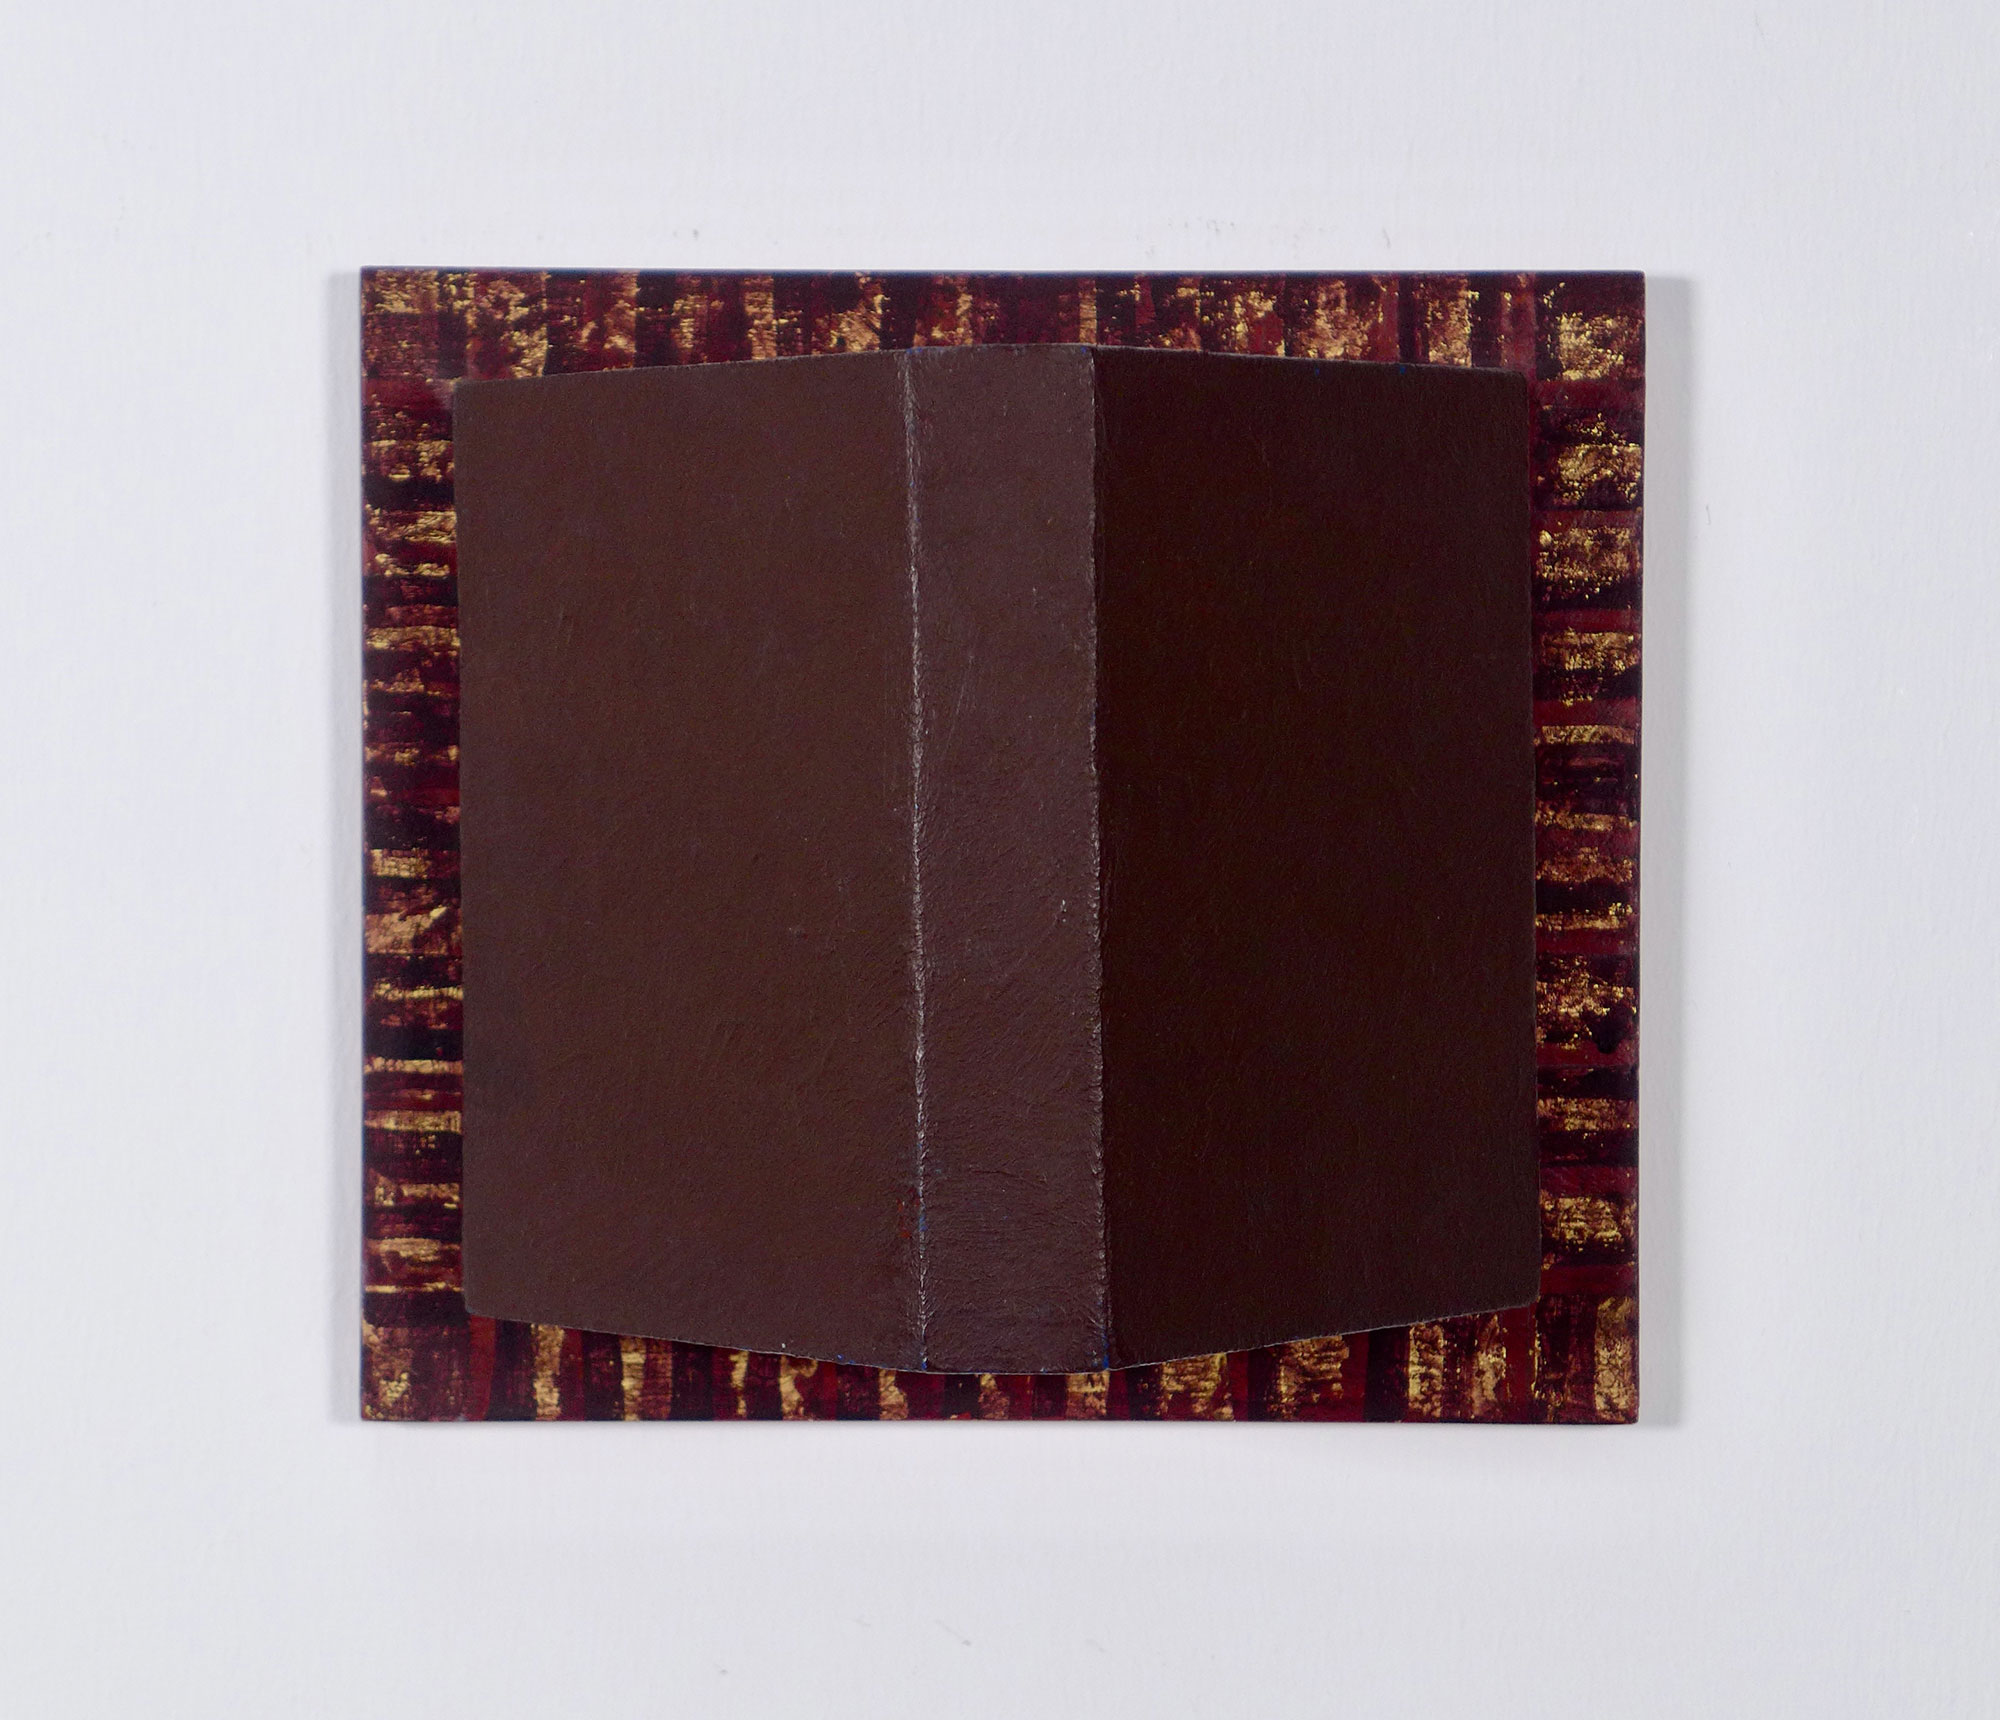 Kenneth Dingwall, Untitled, 1988, acrylic and gold leaf on wood, 18cm x 20cm x 11cm